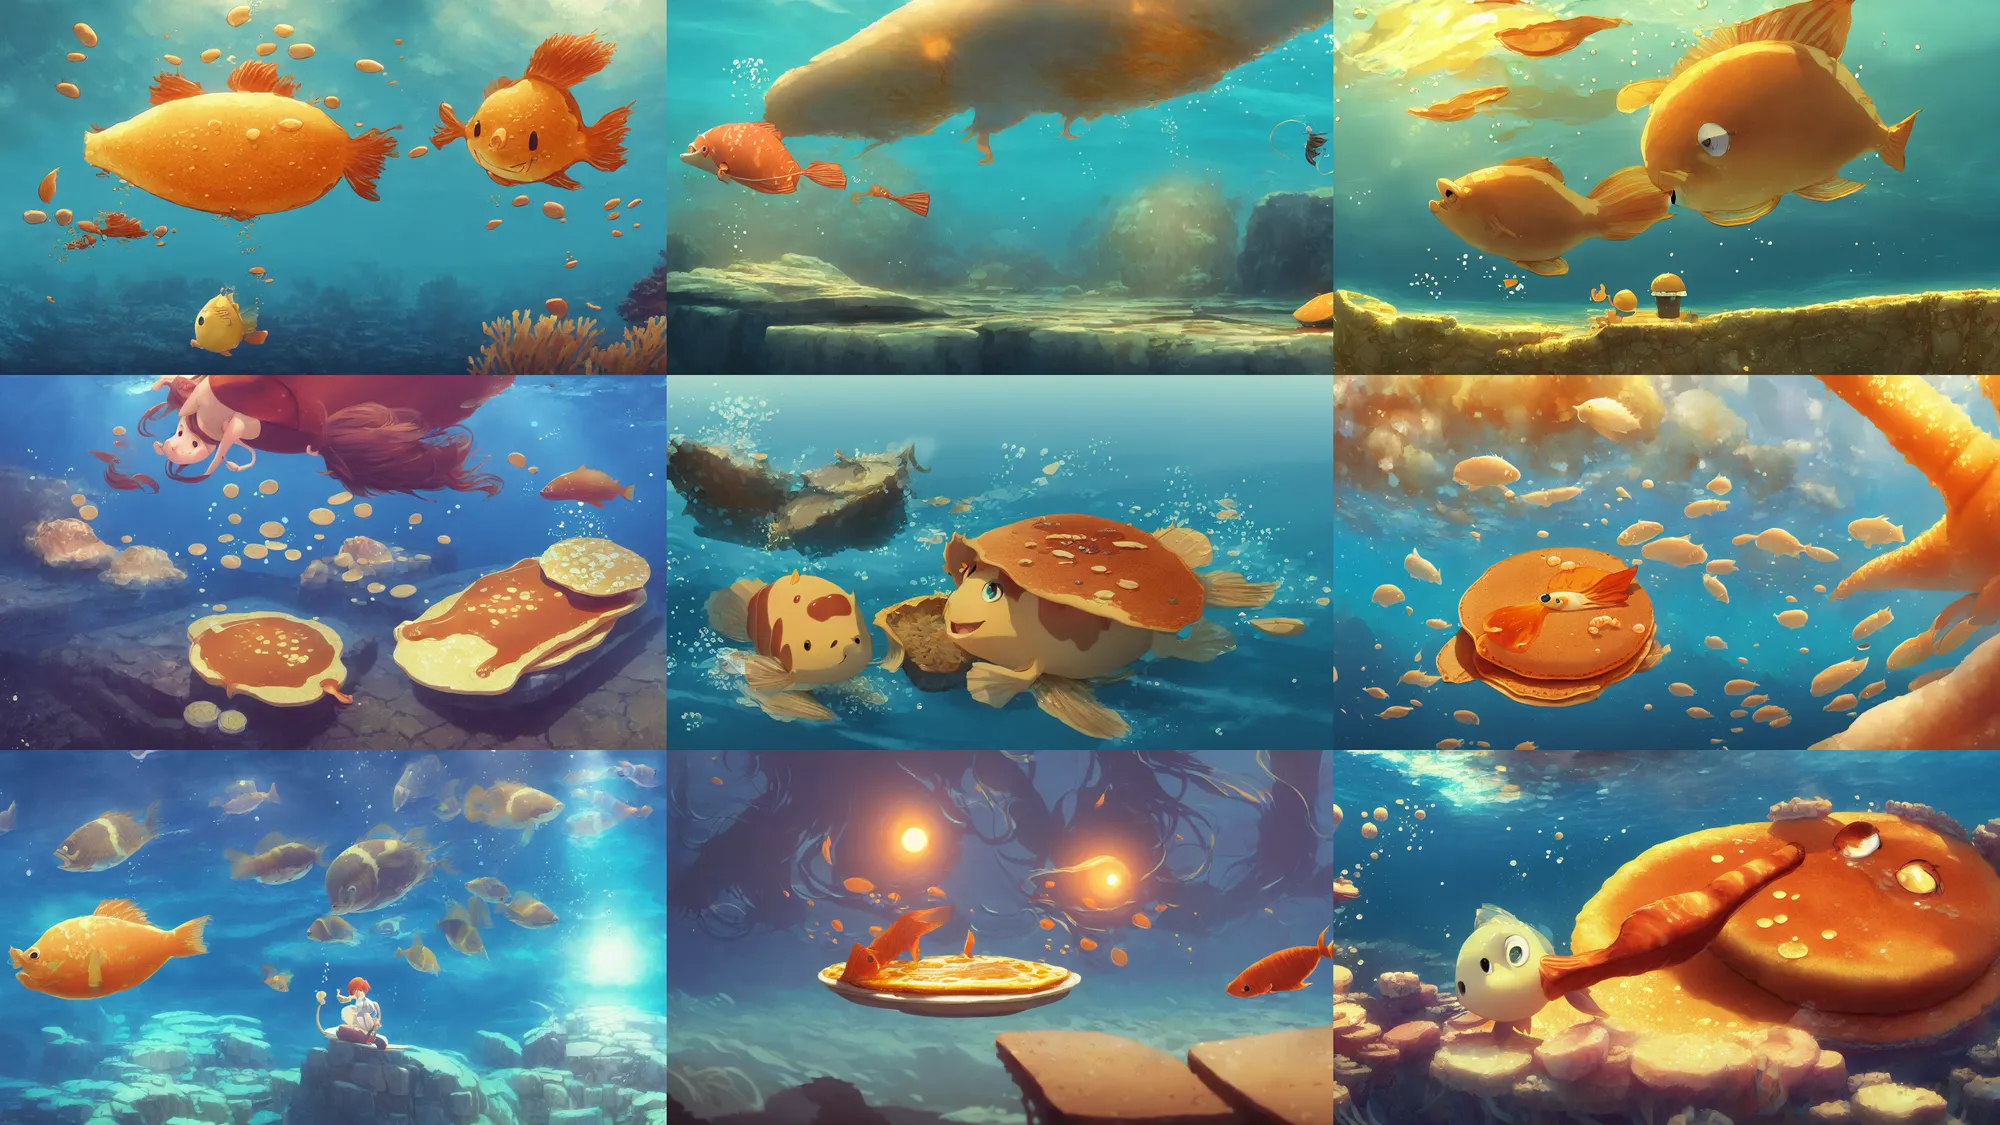 Prompt: digital underwater art of a happy flat pancake fish swimming in syrup, cute, 4 k, fish made of pancake, fantasy food world, living food adorable pancake, brown atmospheric lighting, by makoto shinkai, studio ghibli, greg rutkowski